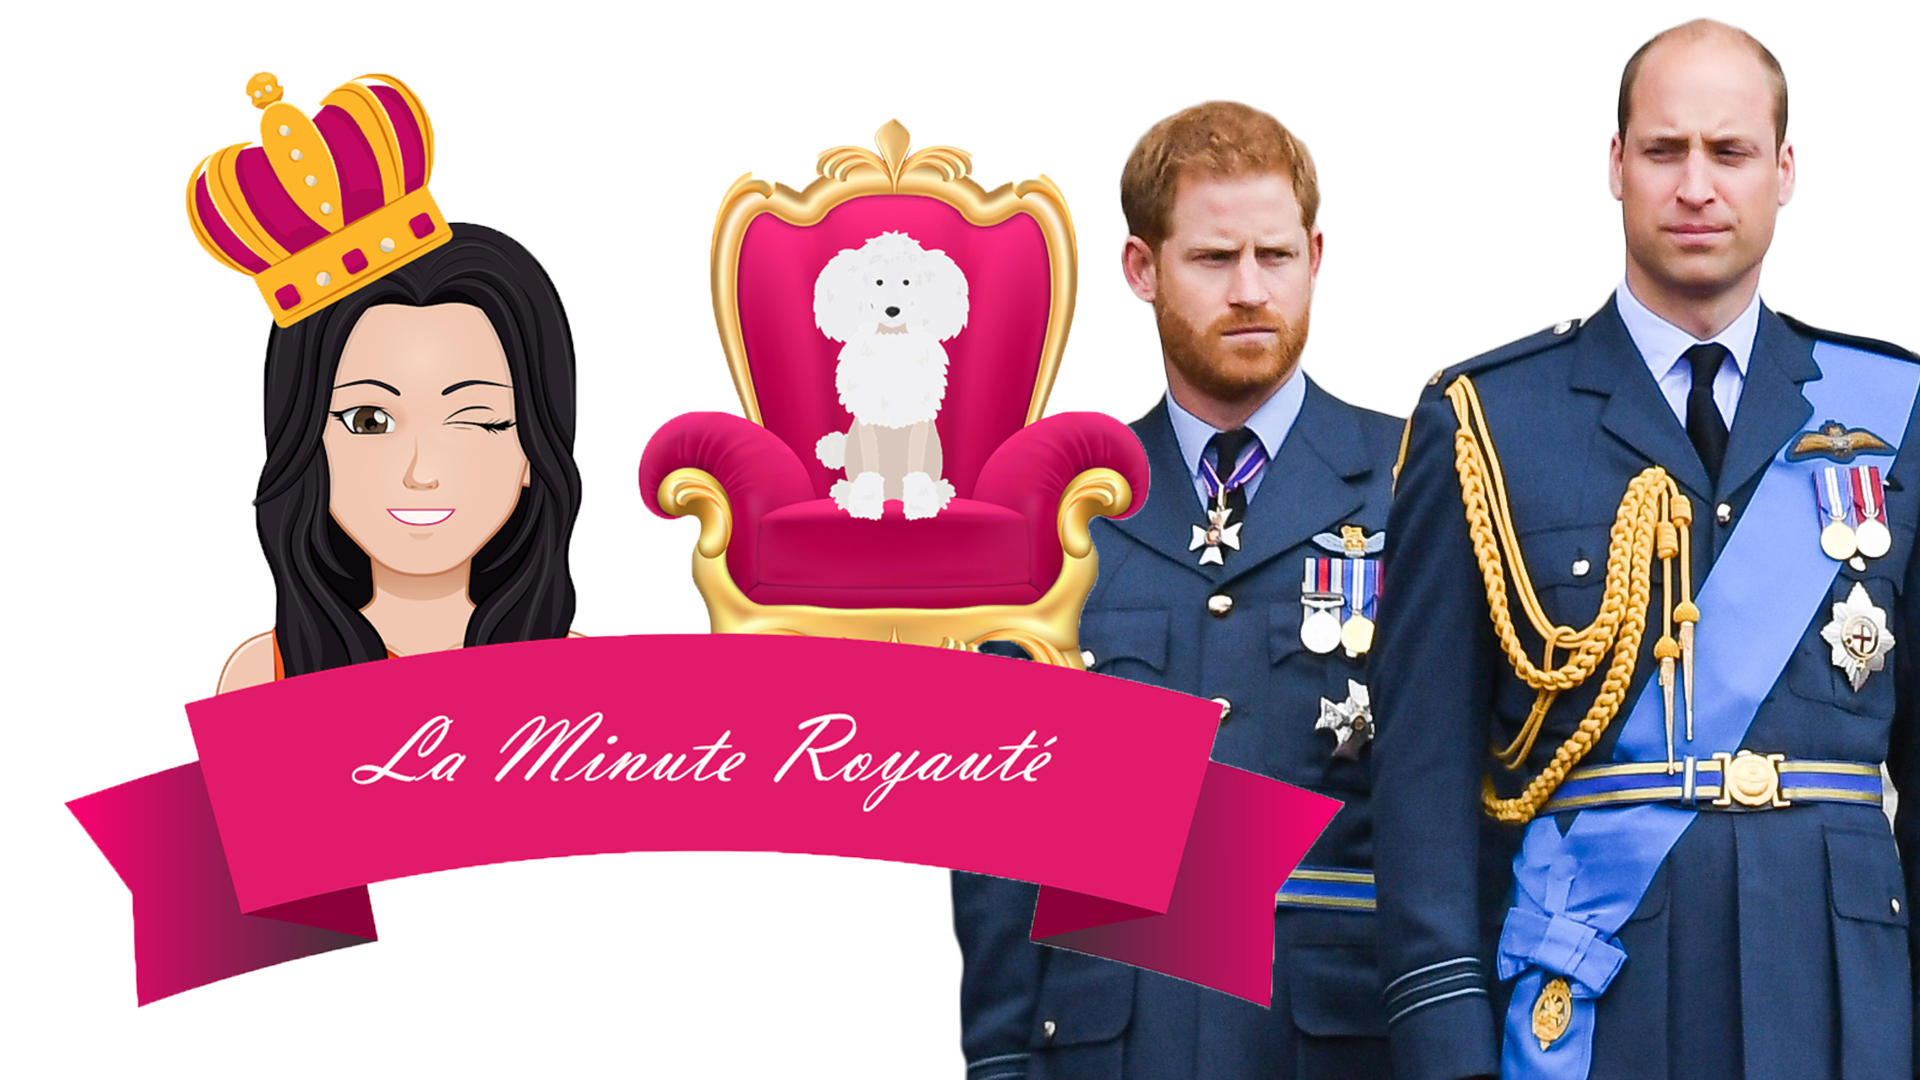 La minute royauté : Le prince Harry prend (encore plus) ses distances avec le prince William